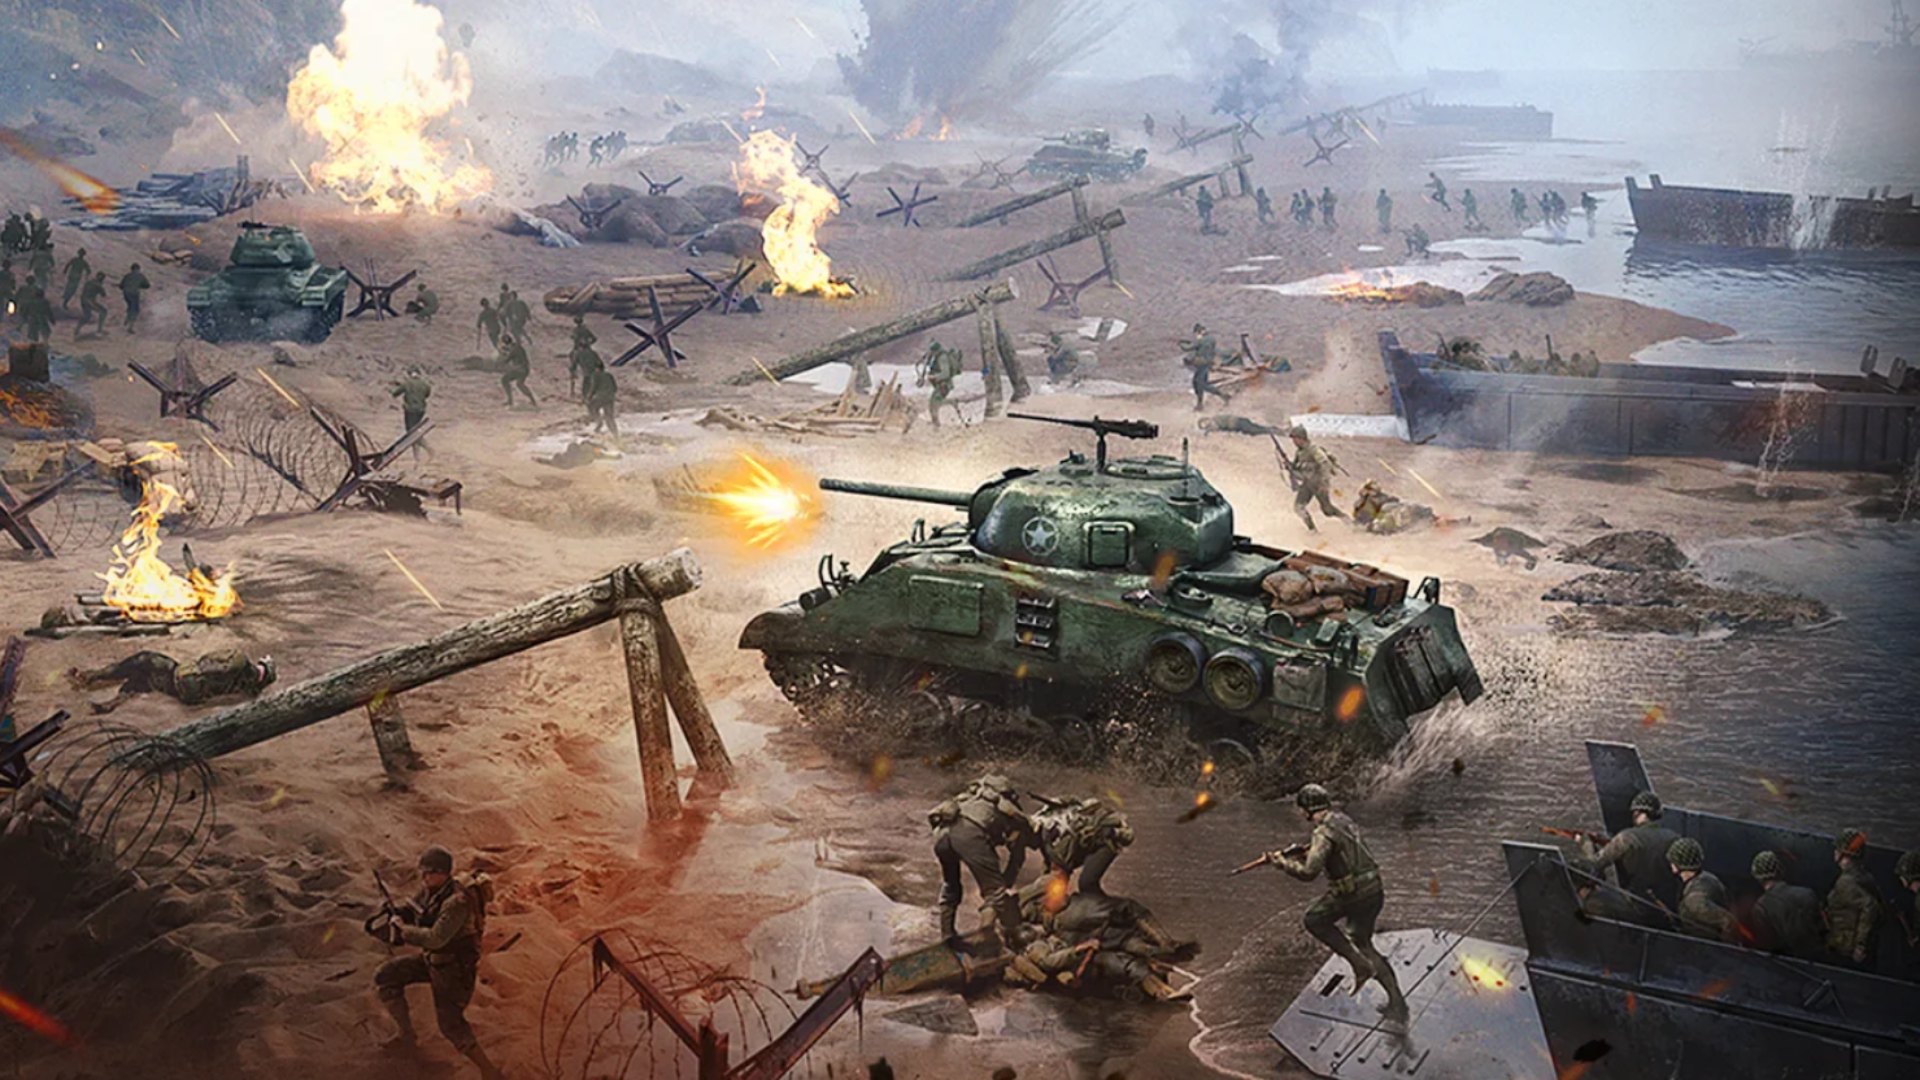 Καλύτερα κινητά παιχνίδια πολέμου: Warpath. Η εικόνα δείχνει ένα πεδίο μάχης γεμάτο δεξαμενές και στρατιώτες